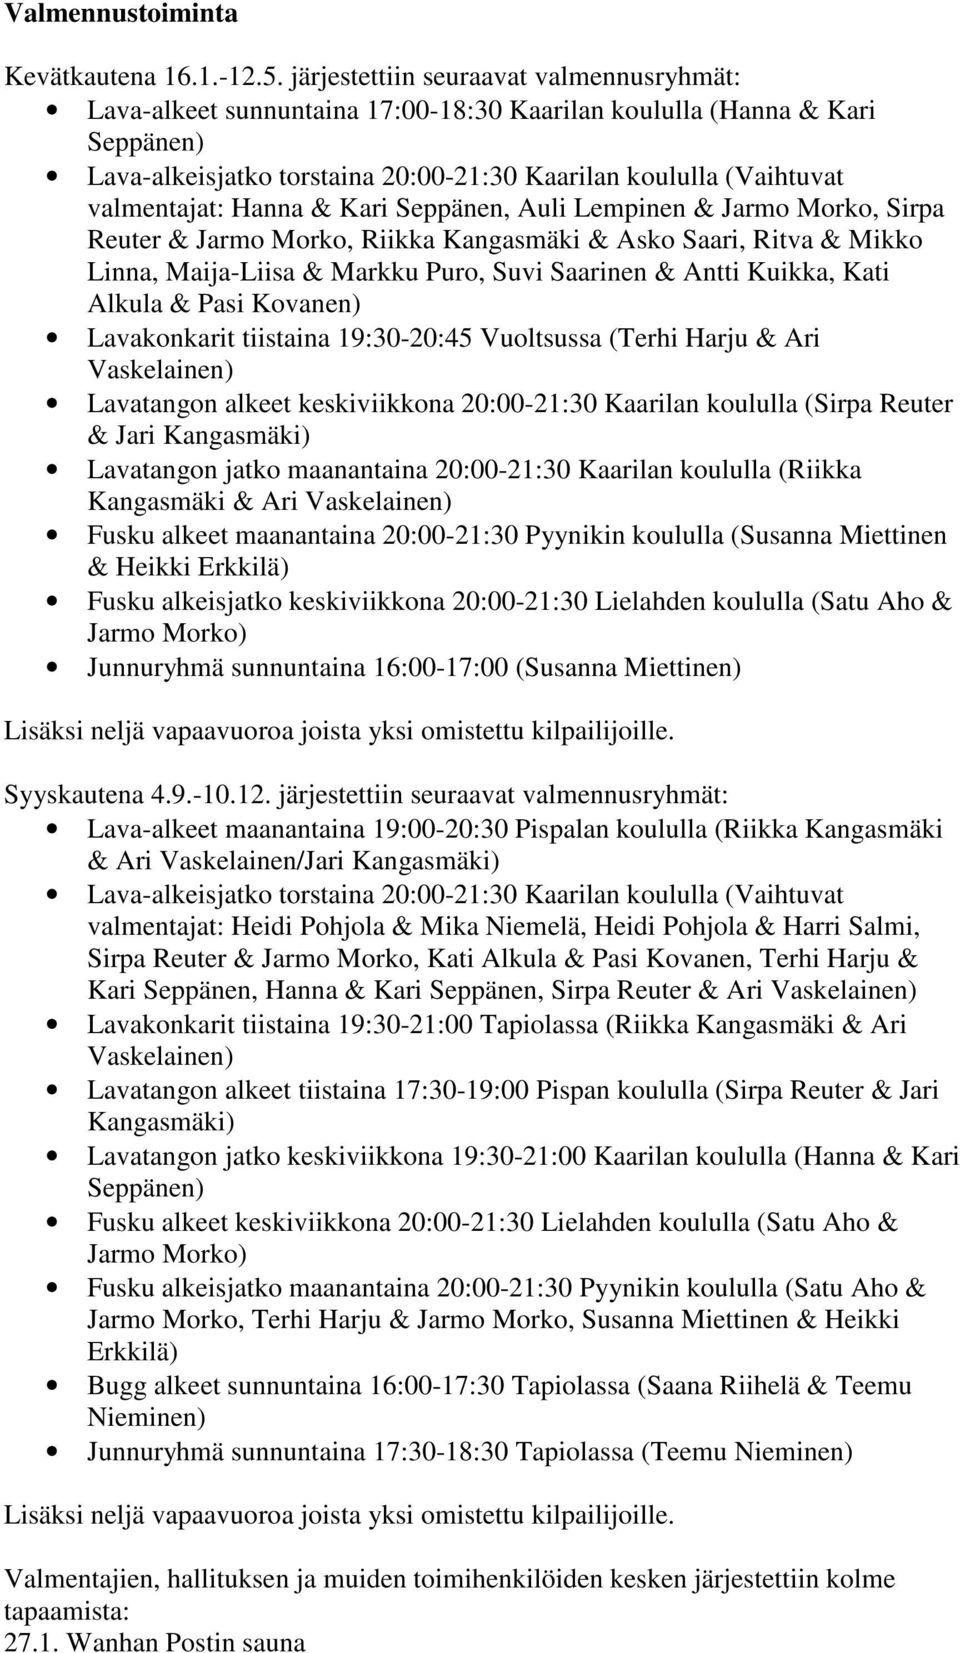 Hanna & Kari Seppänen, Auli Lempinen & Jarmo Morko, Sirpa Reuter & Jarmo Morko, Riikka Kangasmäki & Asko Saari, Ritva & Mikko Linna, Maija-Liisa & Markku Puro, Suvi Saarinen & Antti Kuikka, Kati